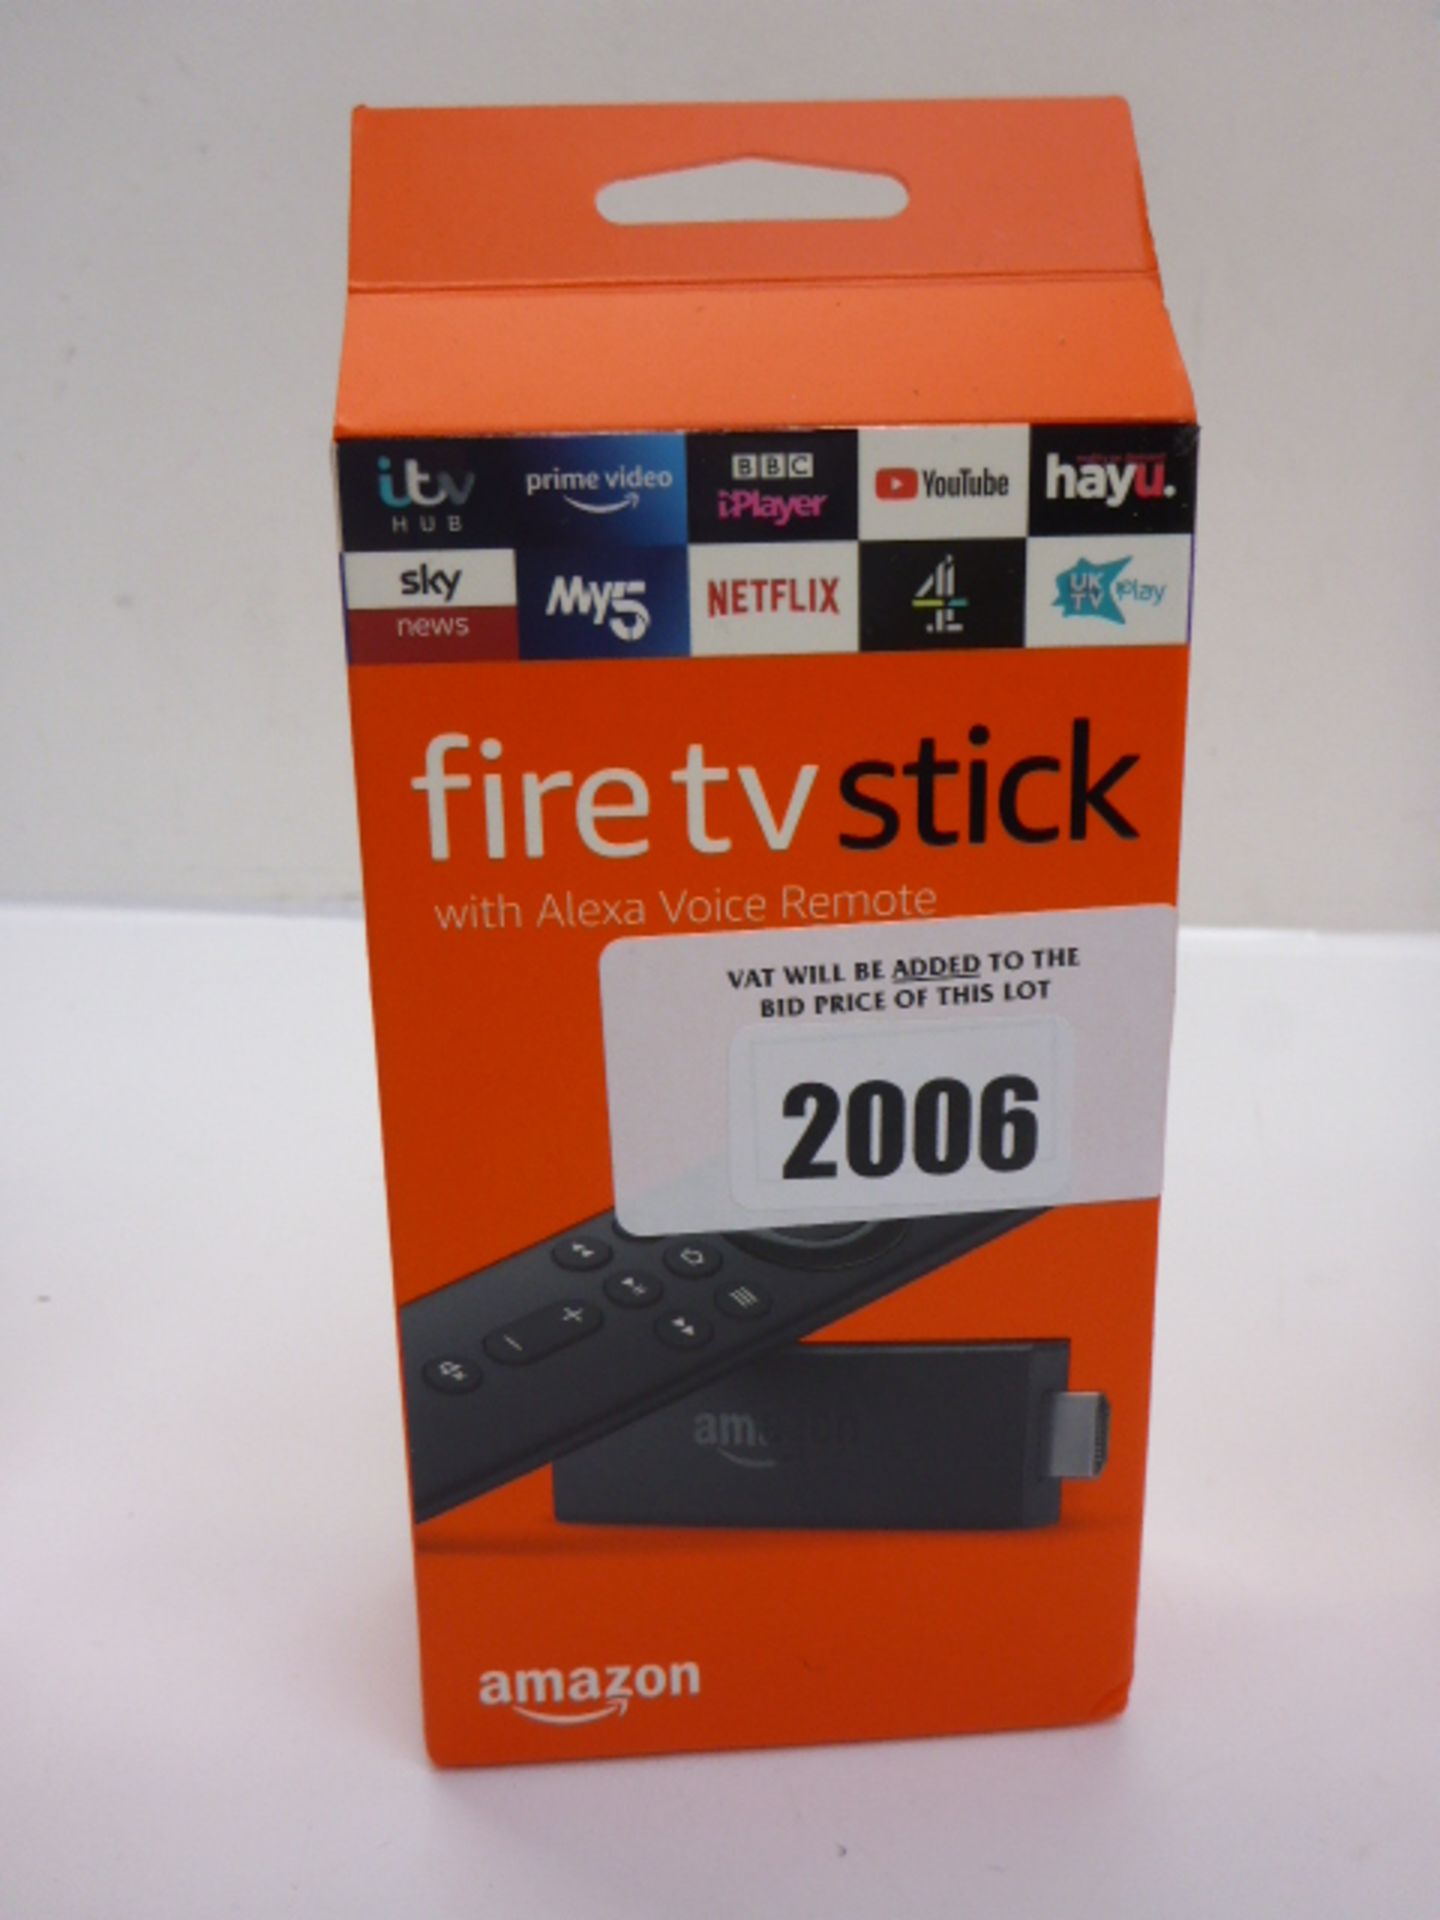 Amazon Fire tv stick boxed.